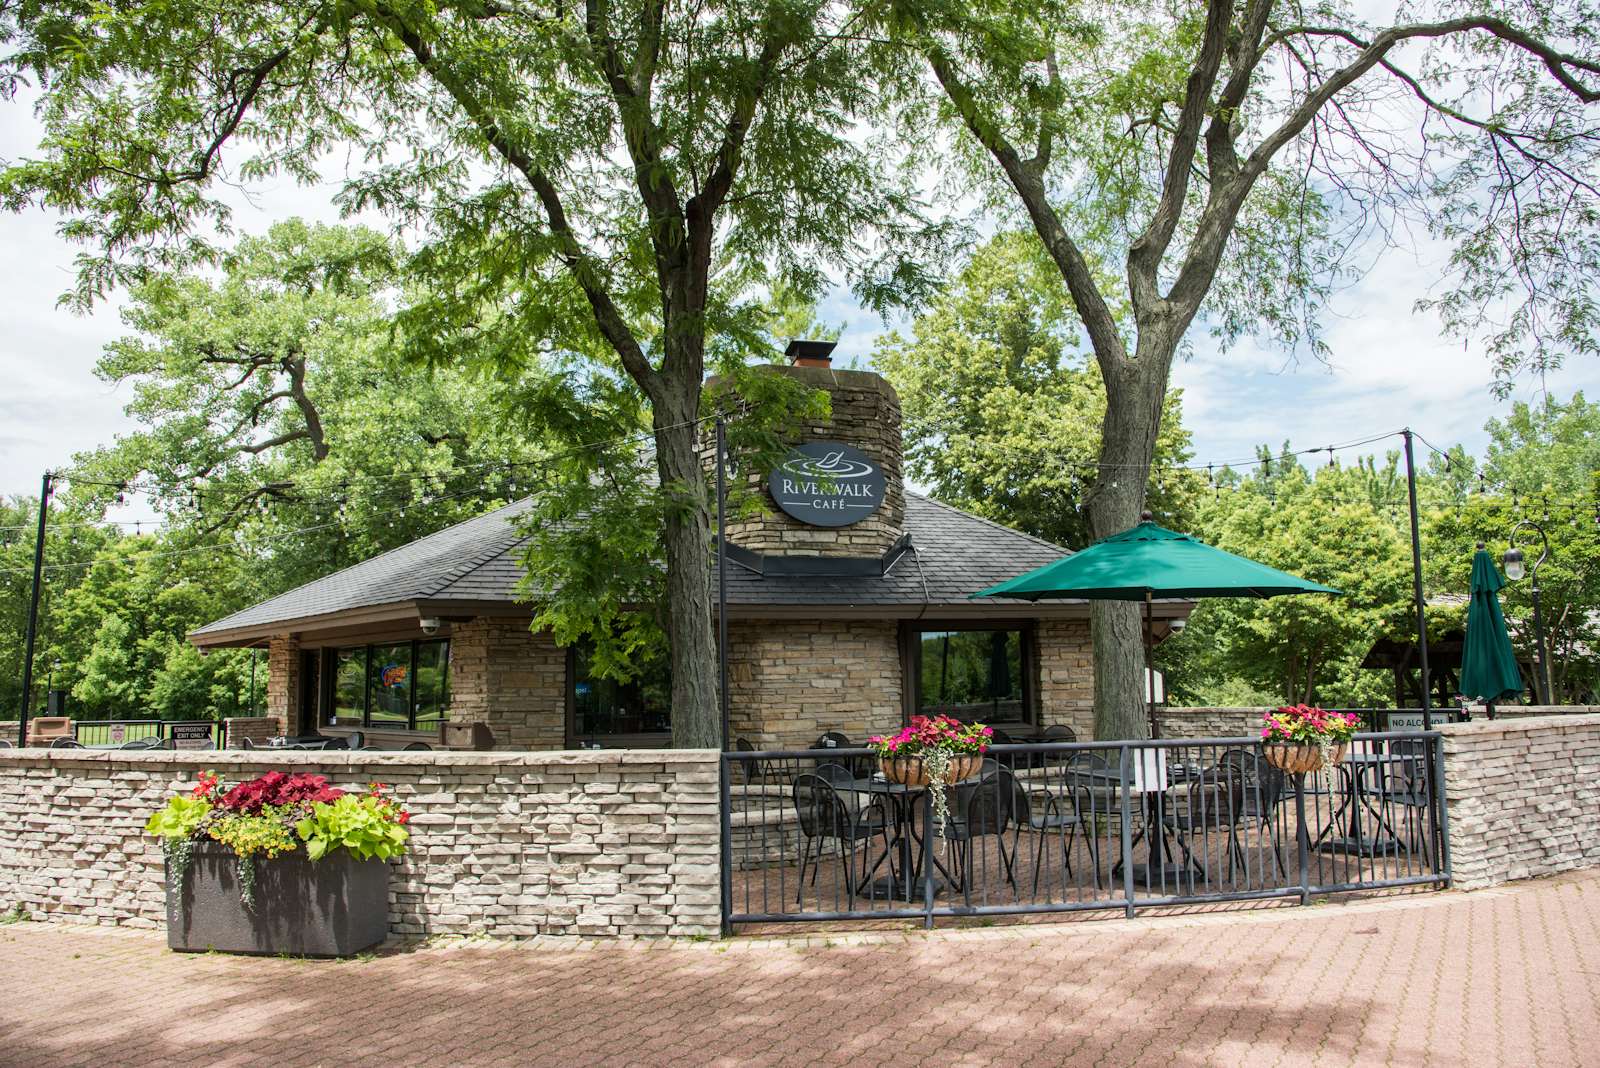 Riverwalk Cafe Naperville Illinois